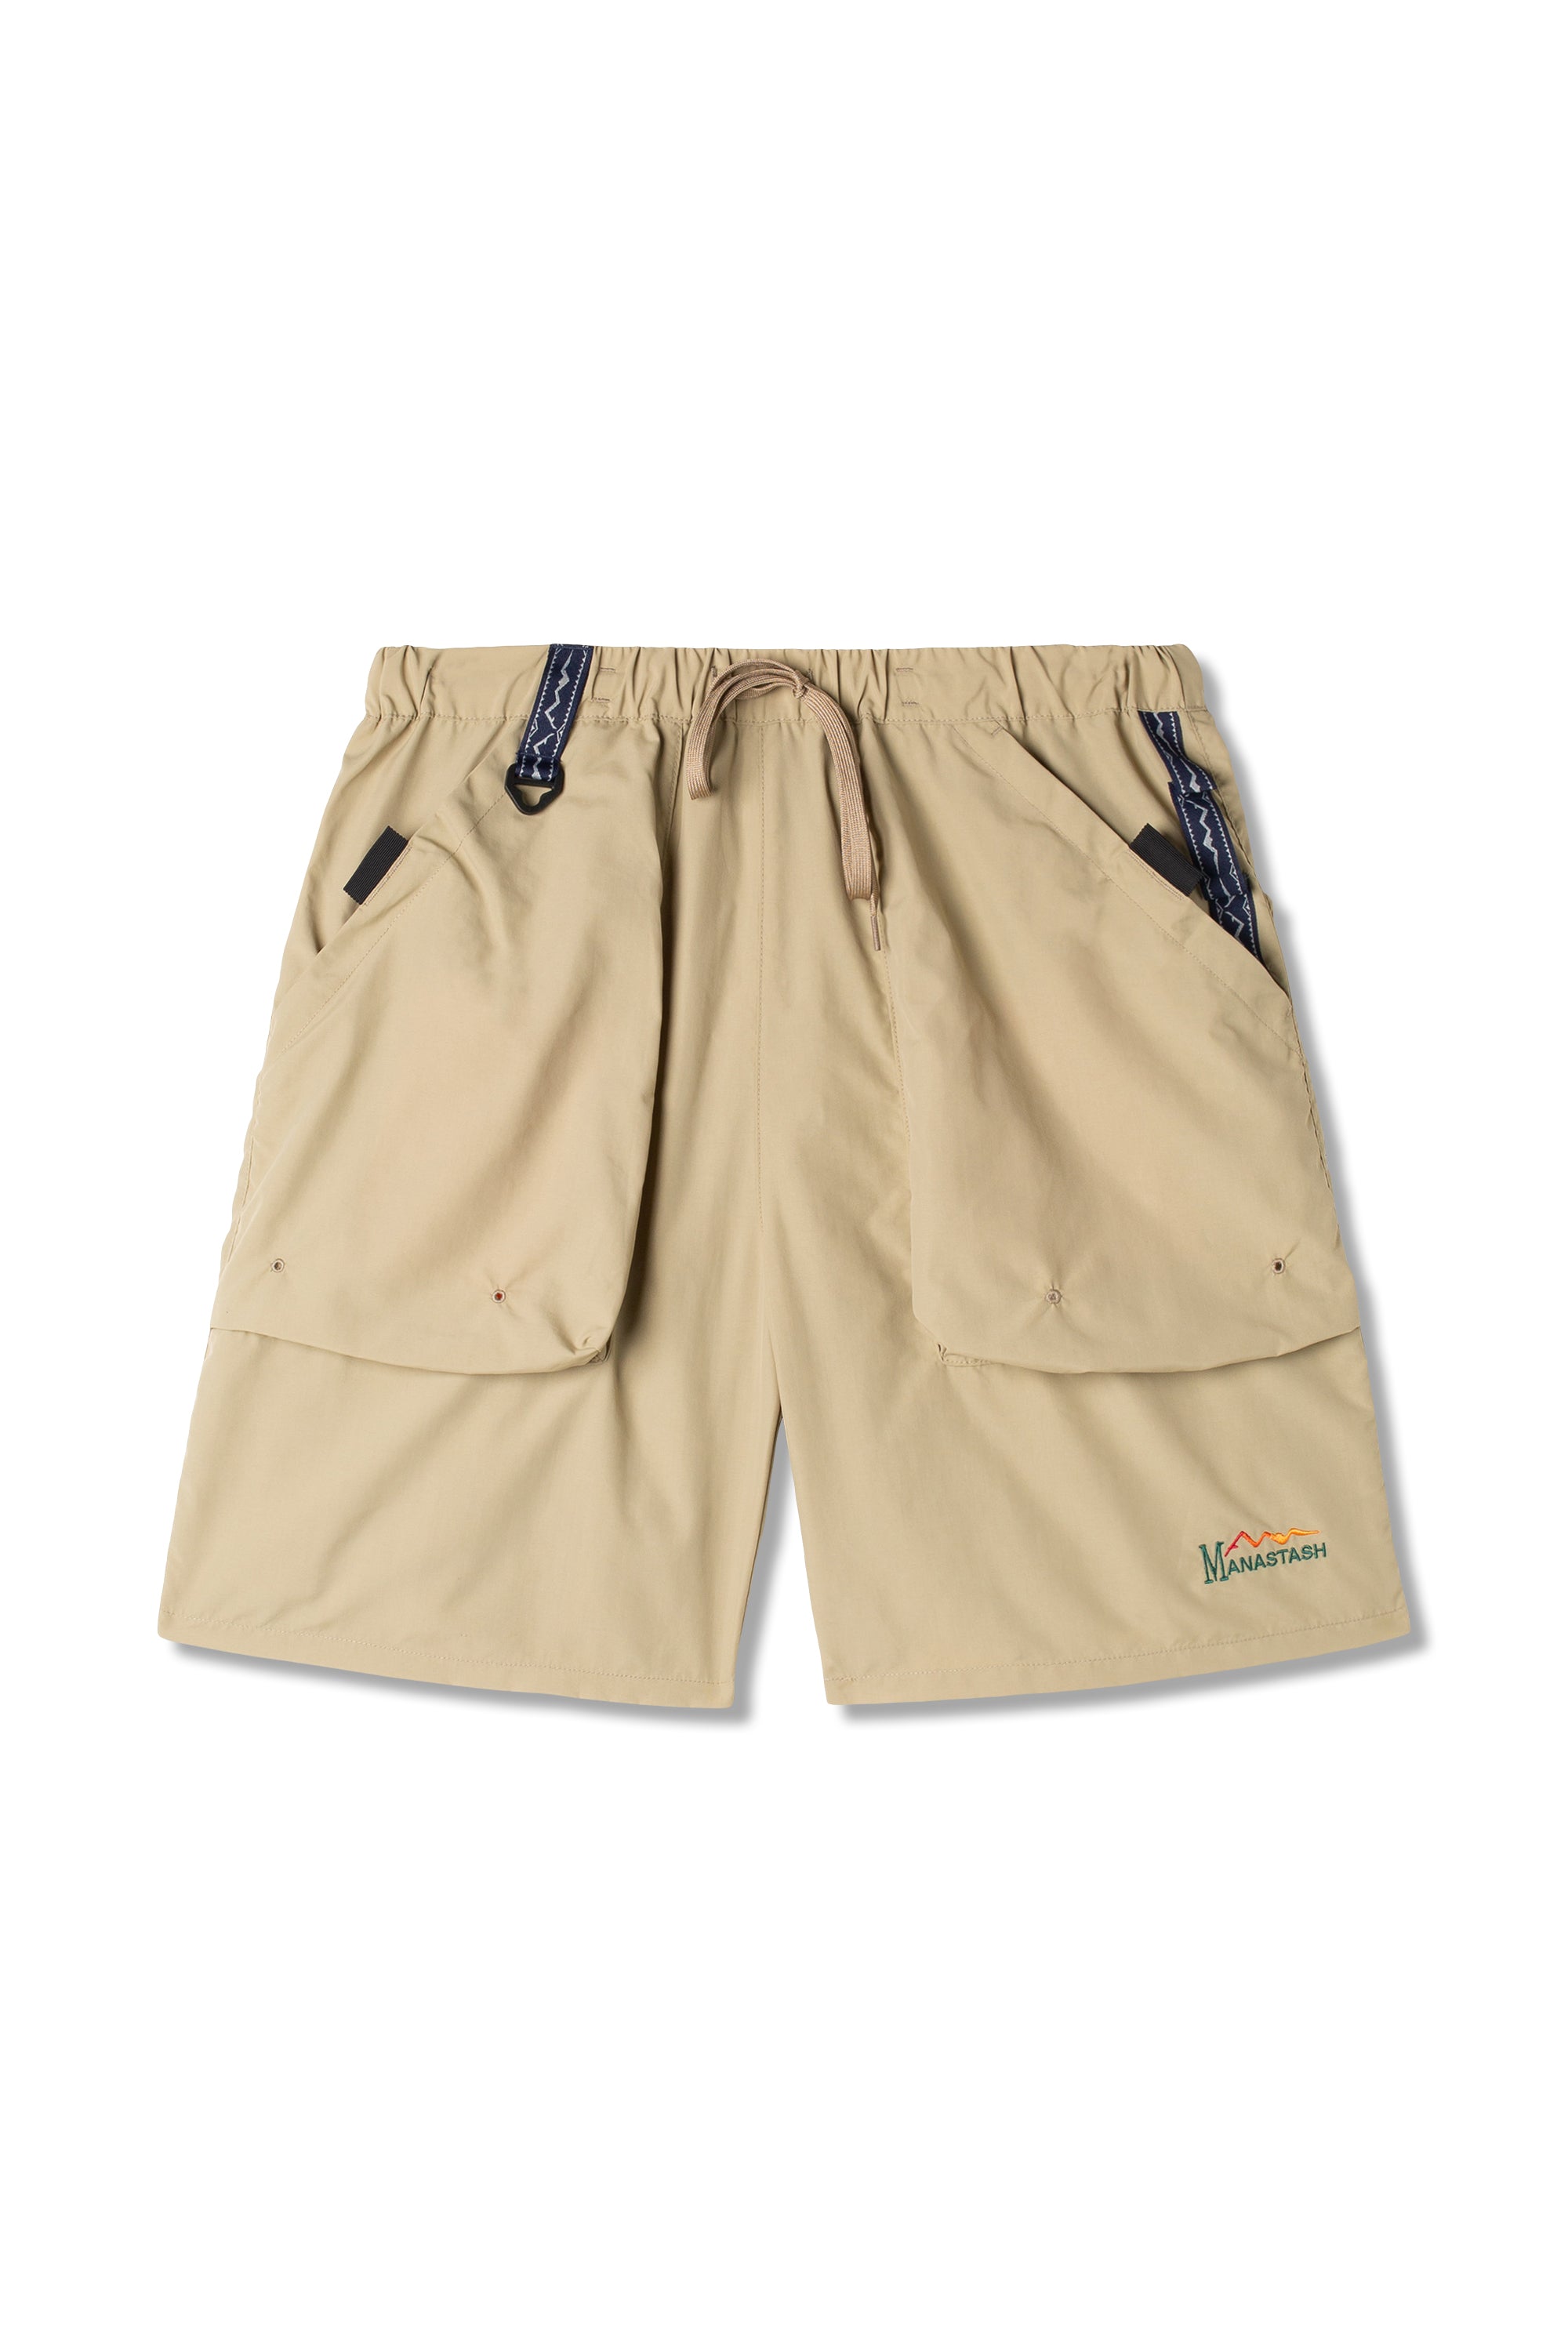 Mens Cotton Linen Shorts Summer Beach Hawaiian Drawstring Waist Short Pants